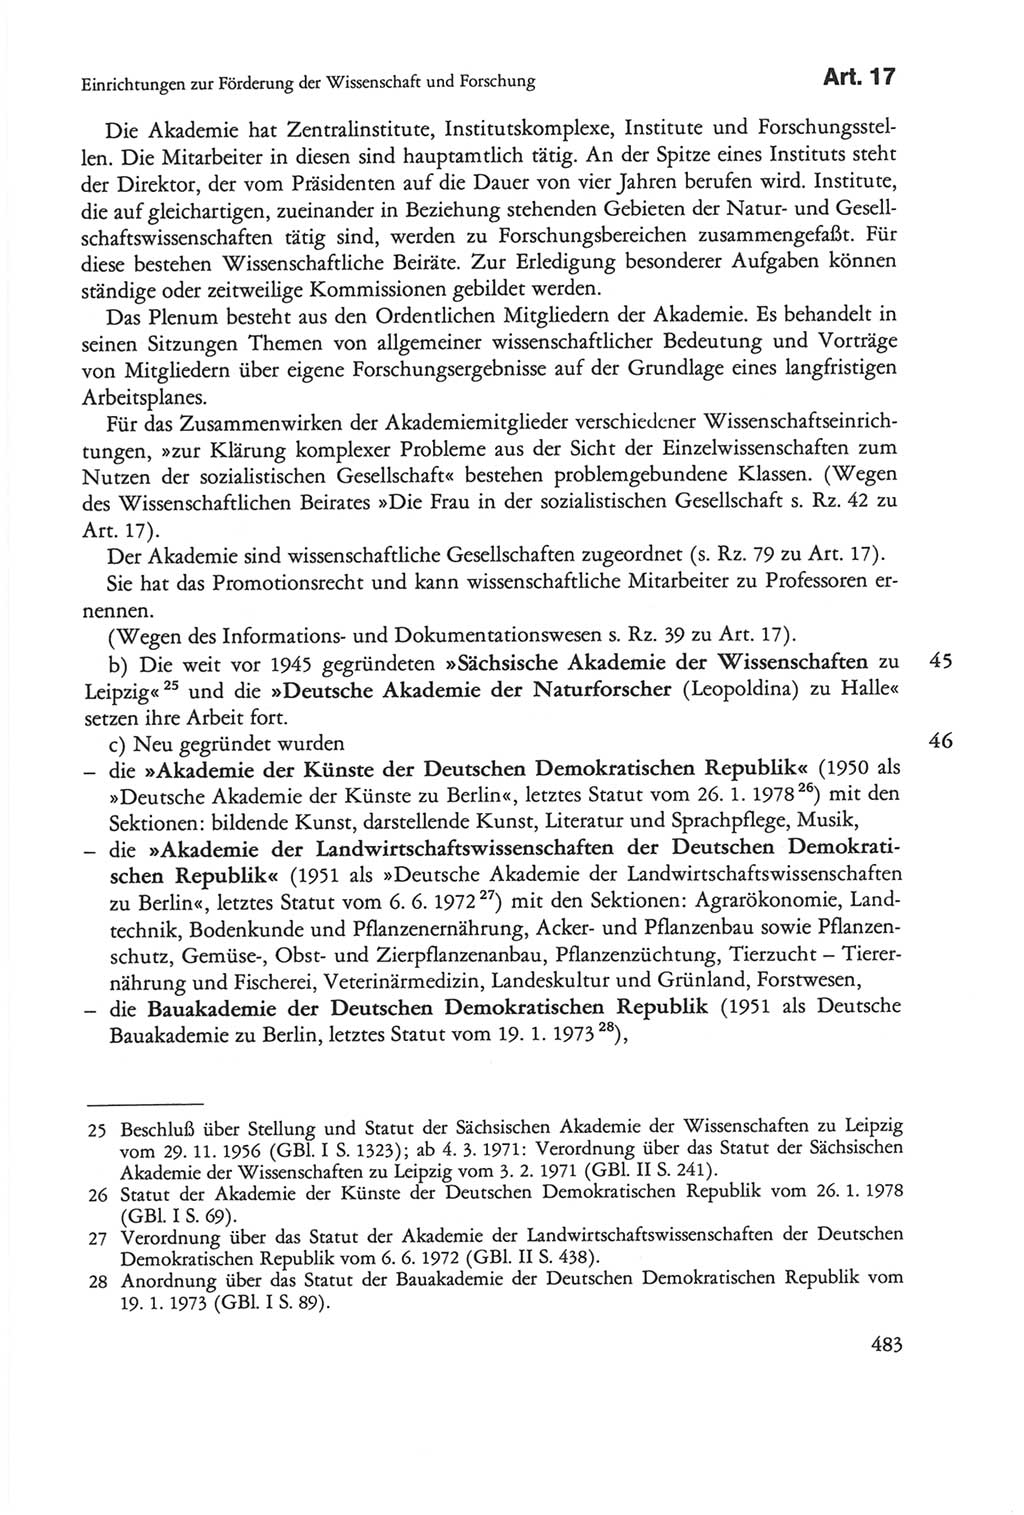 Die sozialistische Verfassung der Deutschen Demokratischen Republik (DDR), Kommentar mit einem Nachtrag 1997, Seite 483 (Soz. Verf. DDR Komm. Nachtr. 1997, S. 483)